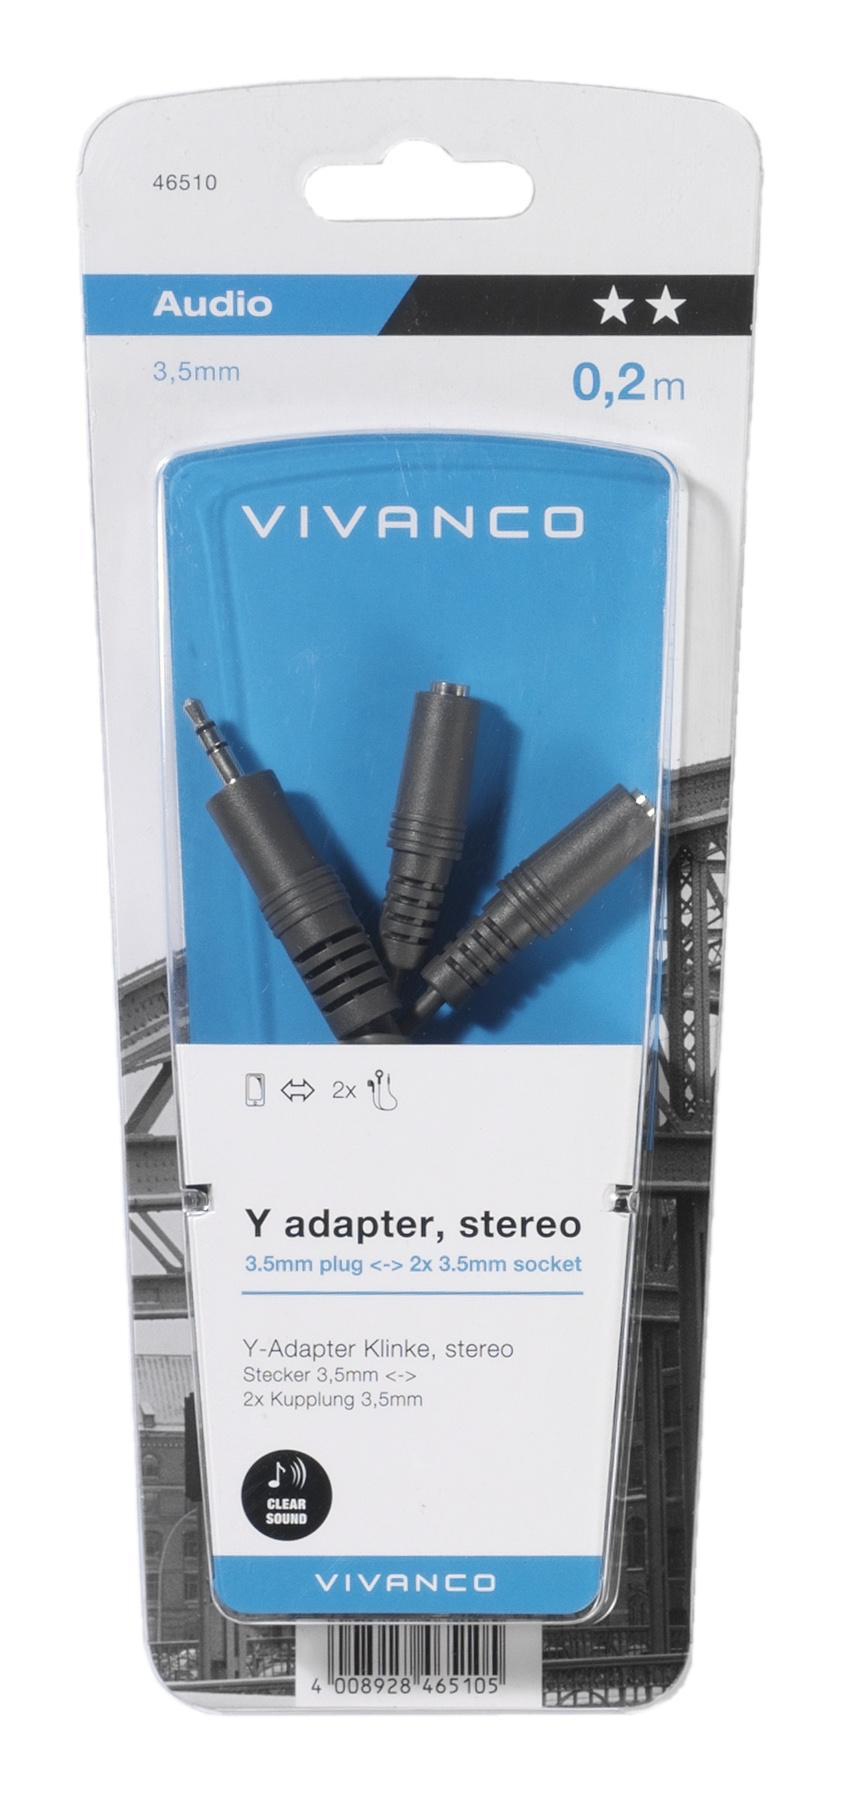 VIVANCO 46510, Klinken Adapter